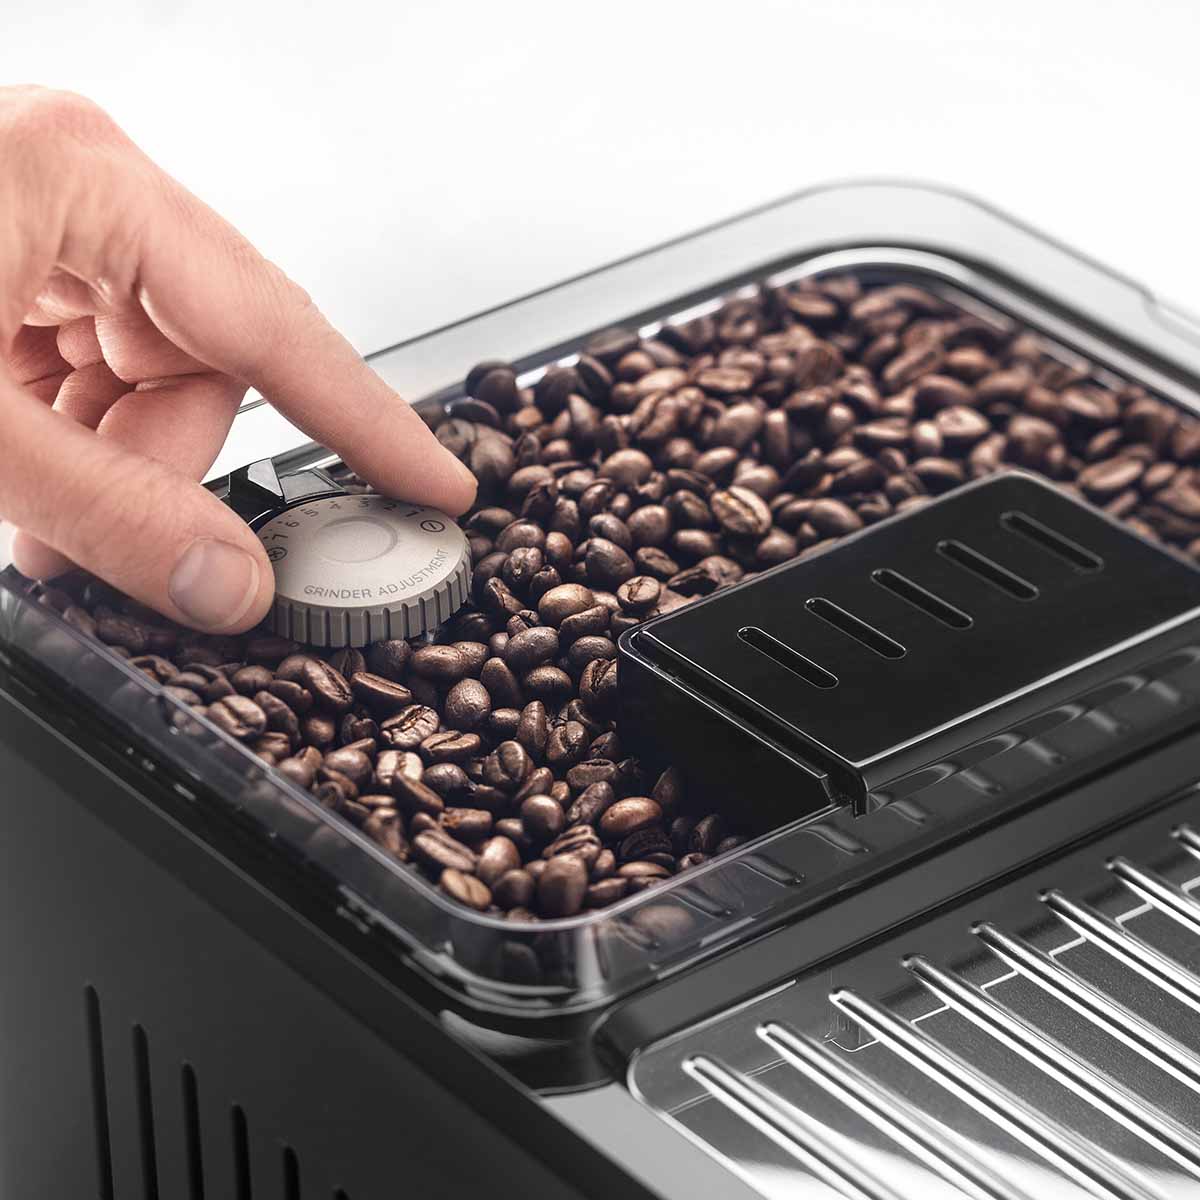 Détartrant DeLonghi Ecodecalk DLSC500 pour machines à café, 500 ml / 5  applications + acheter moins cher